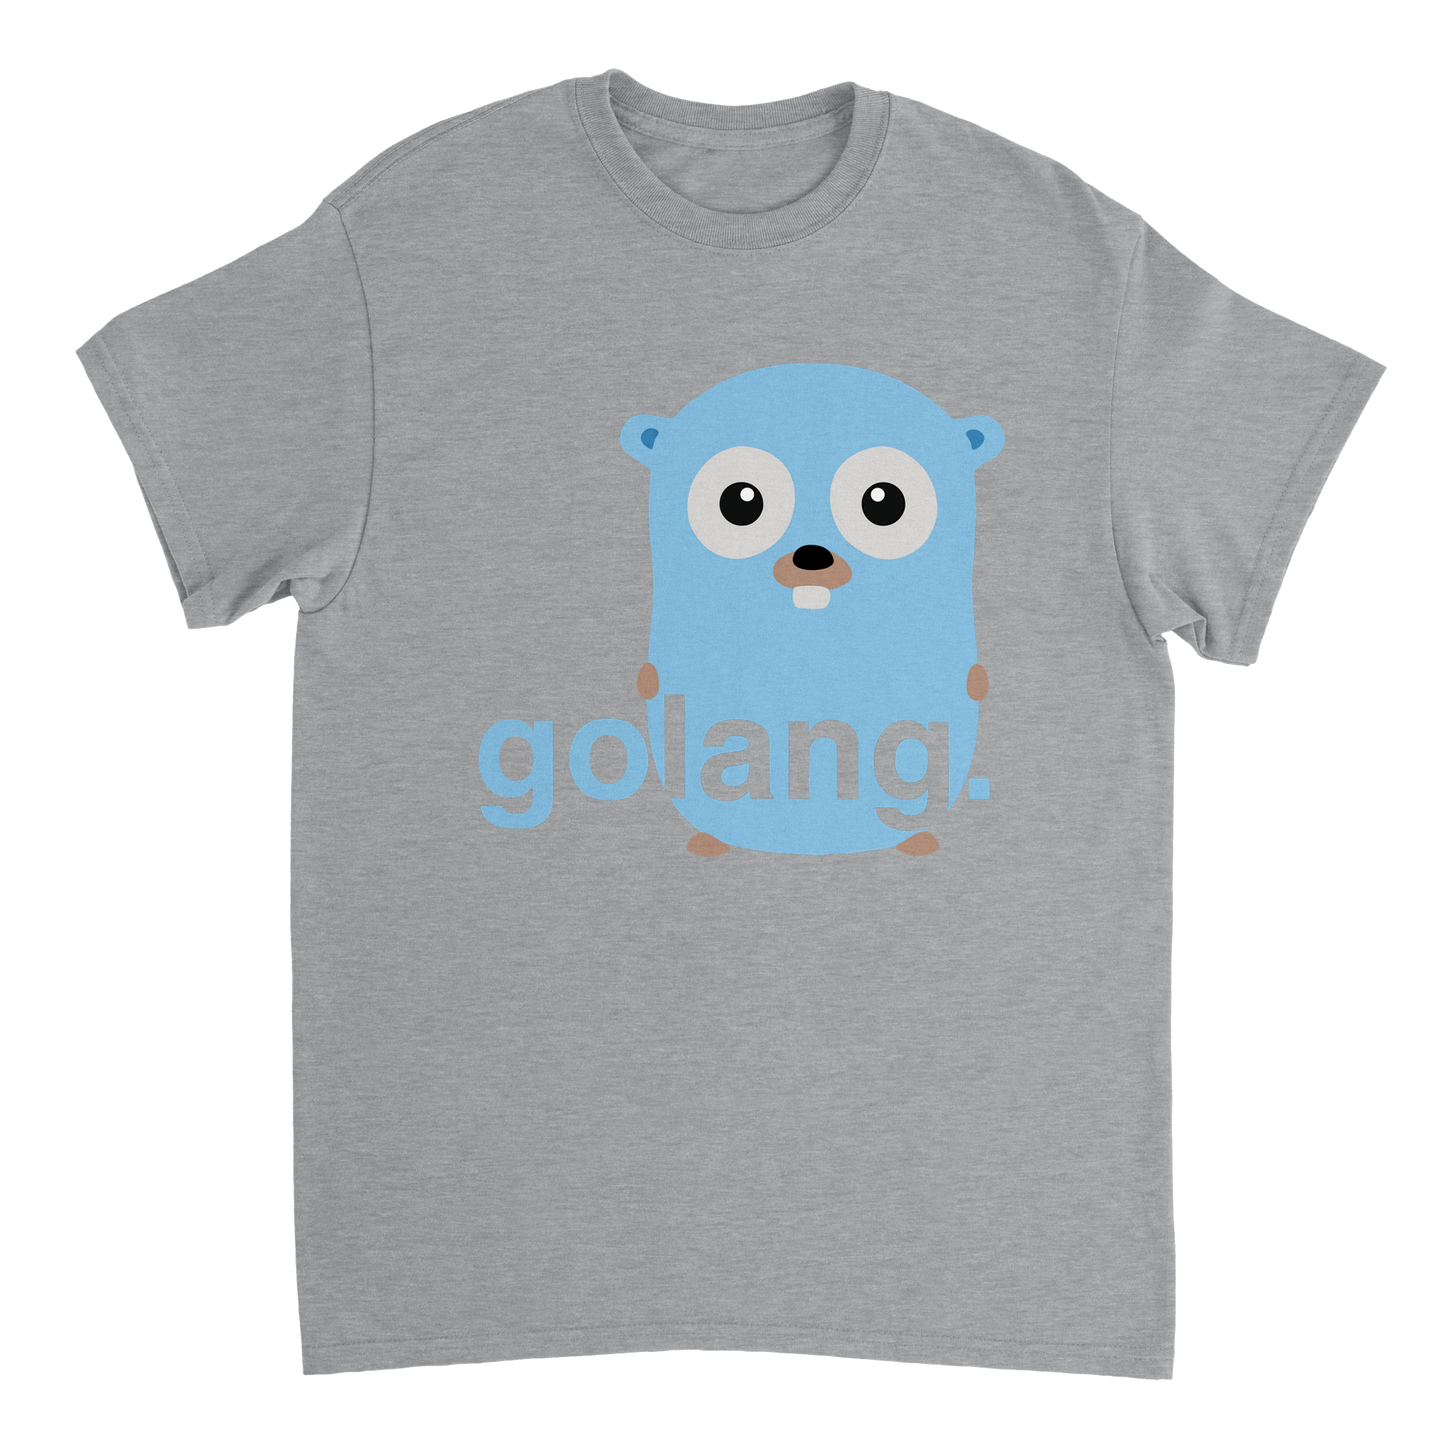 Languages collection - Golang Unisex T-Shirt